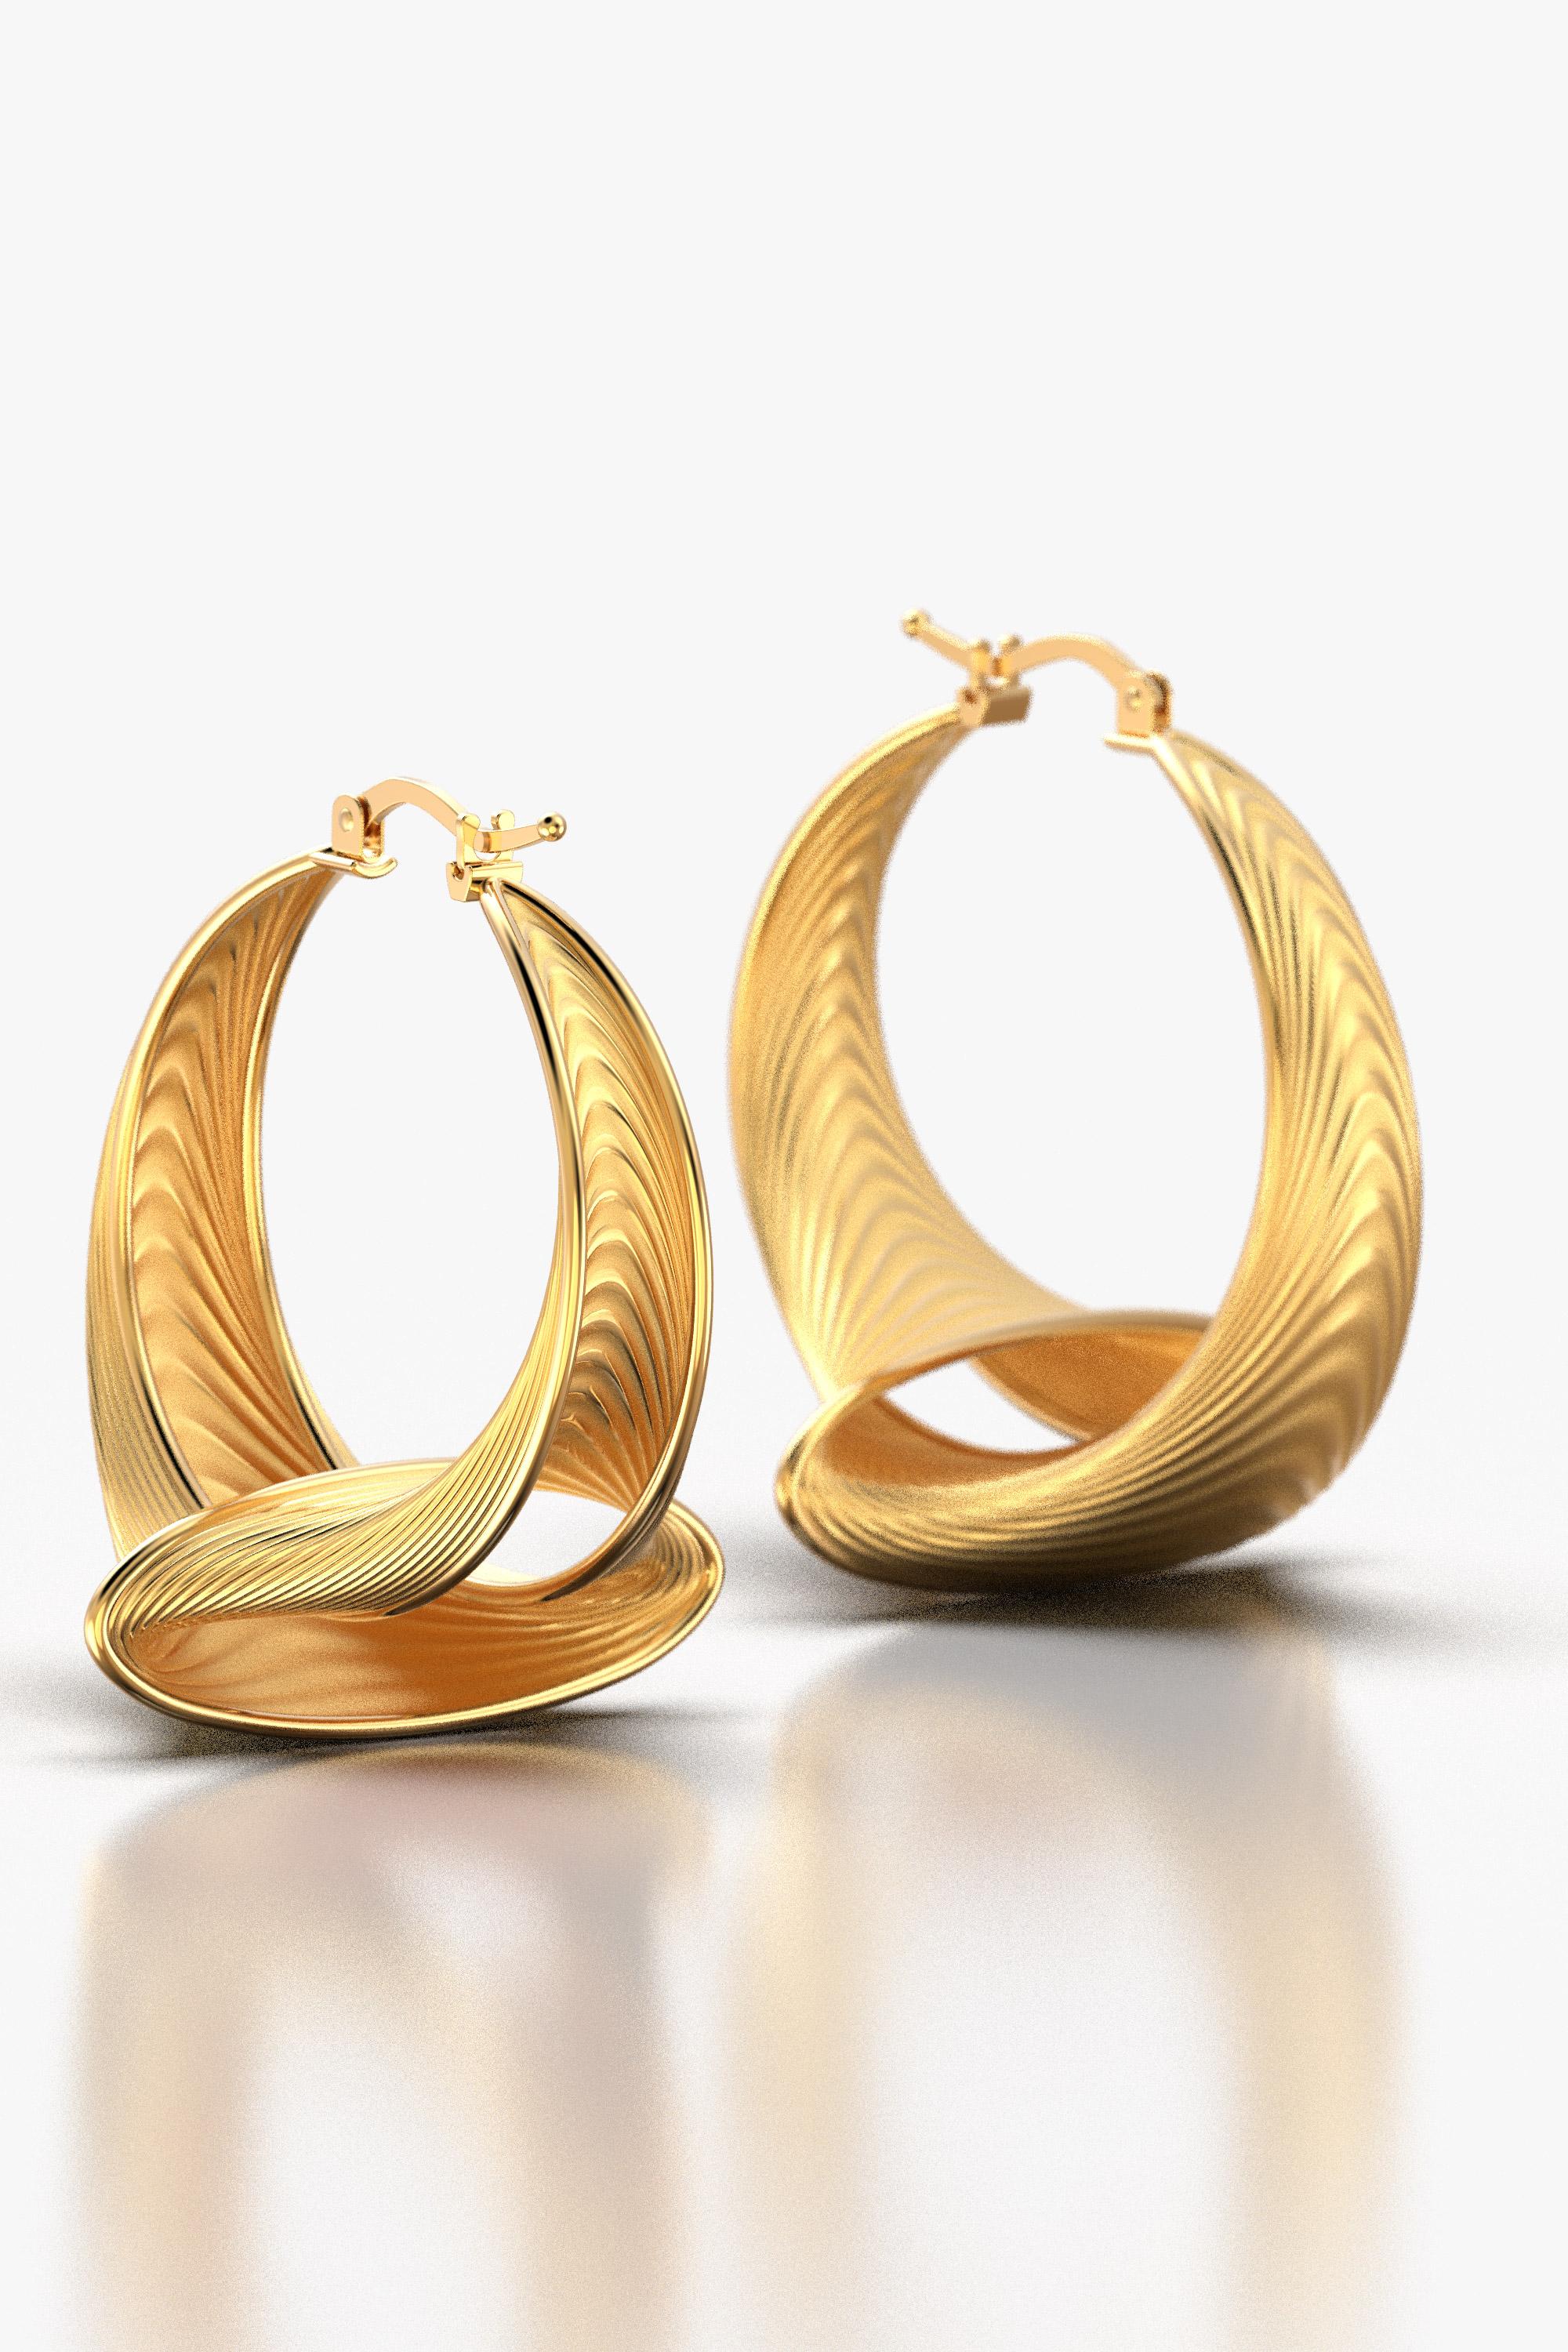 Entdecken Sie zeitlose Eleganz mit unseren auf Bestellung gefertigten großen Ohrringen mit 33 mm Durchmesser. Diese modernen, in Italien von Oltremare Gioielli handgefertigten Ohrringe aus 18-karätigem Gold strahlen Raffinesse aus. Erhöhen Sie Ihren